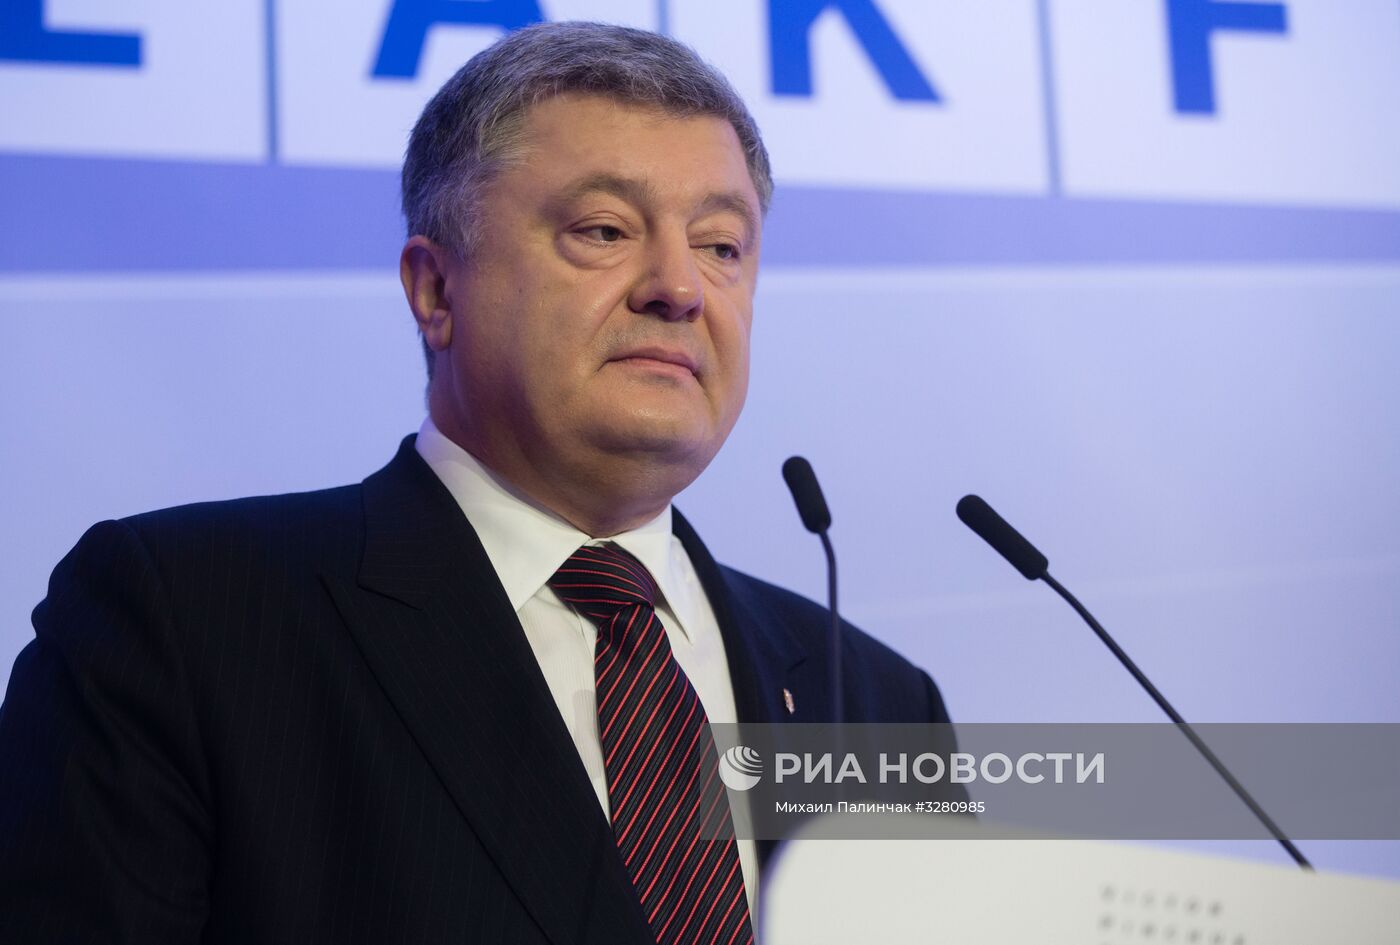 Президент Украины П. Порошенко выступил на форуме в Давосе